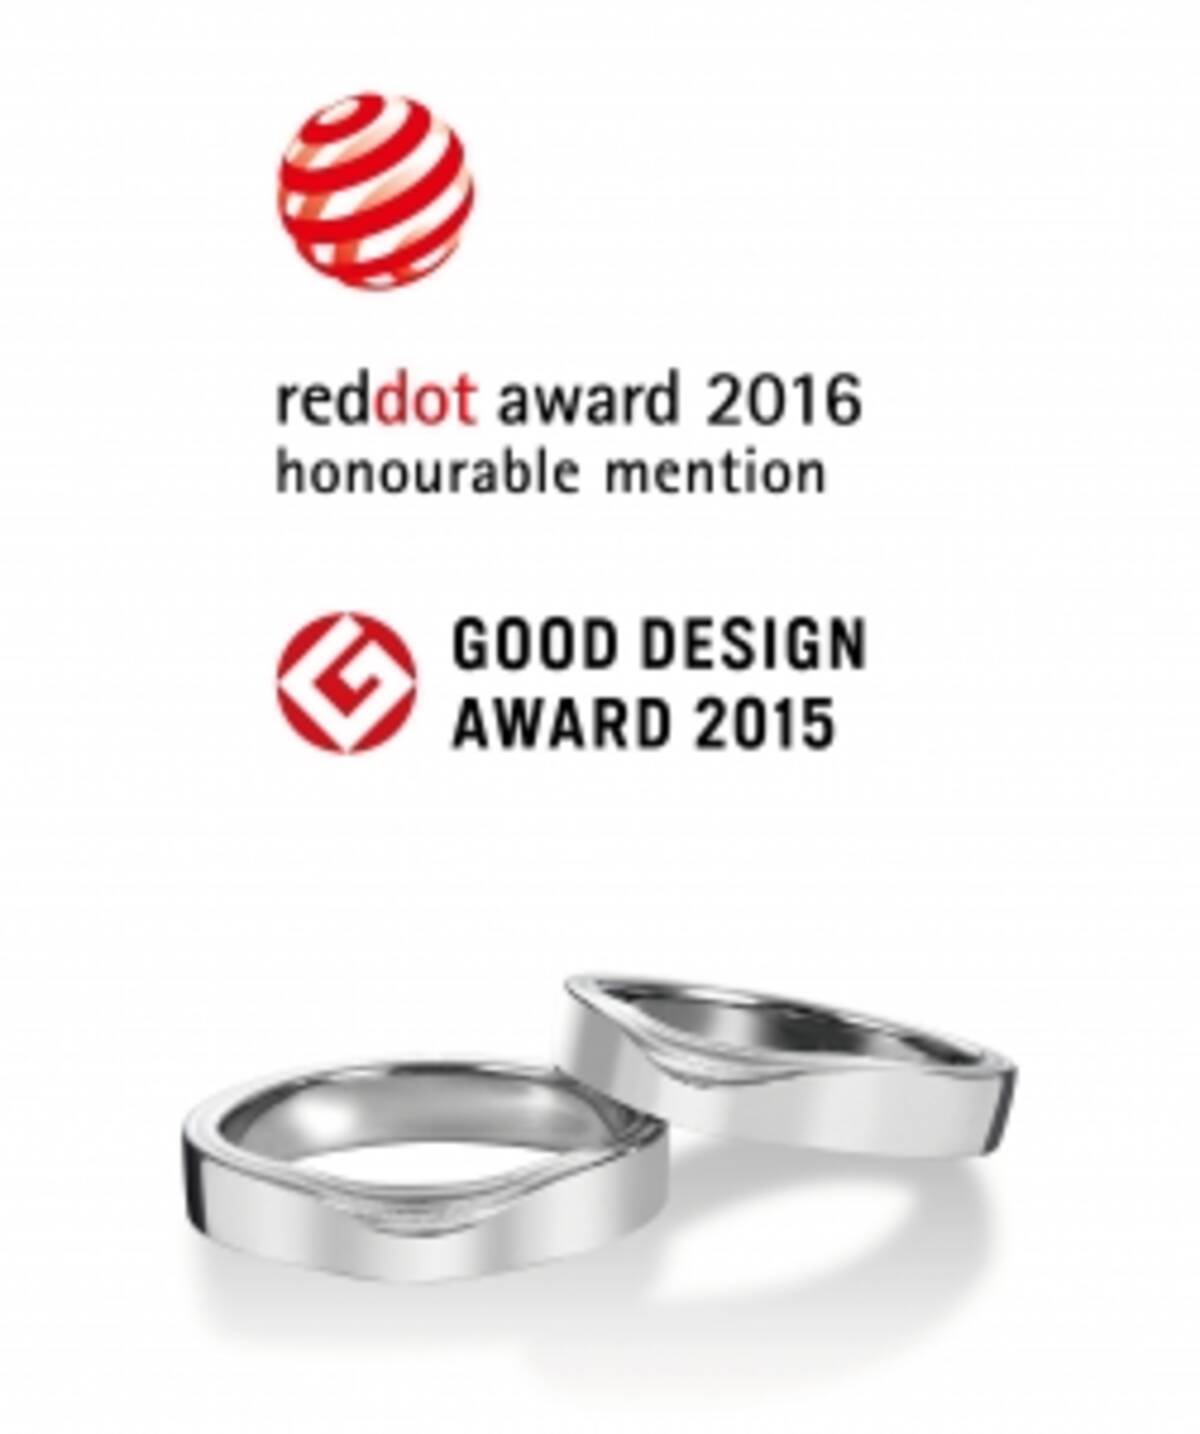 レッドドット デザイン賞 ドイツ 受賞日本初 グッドデザイン賞 と ダブル受賞 の結婚指輪 16年3月31日 エキサイトニュース